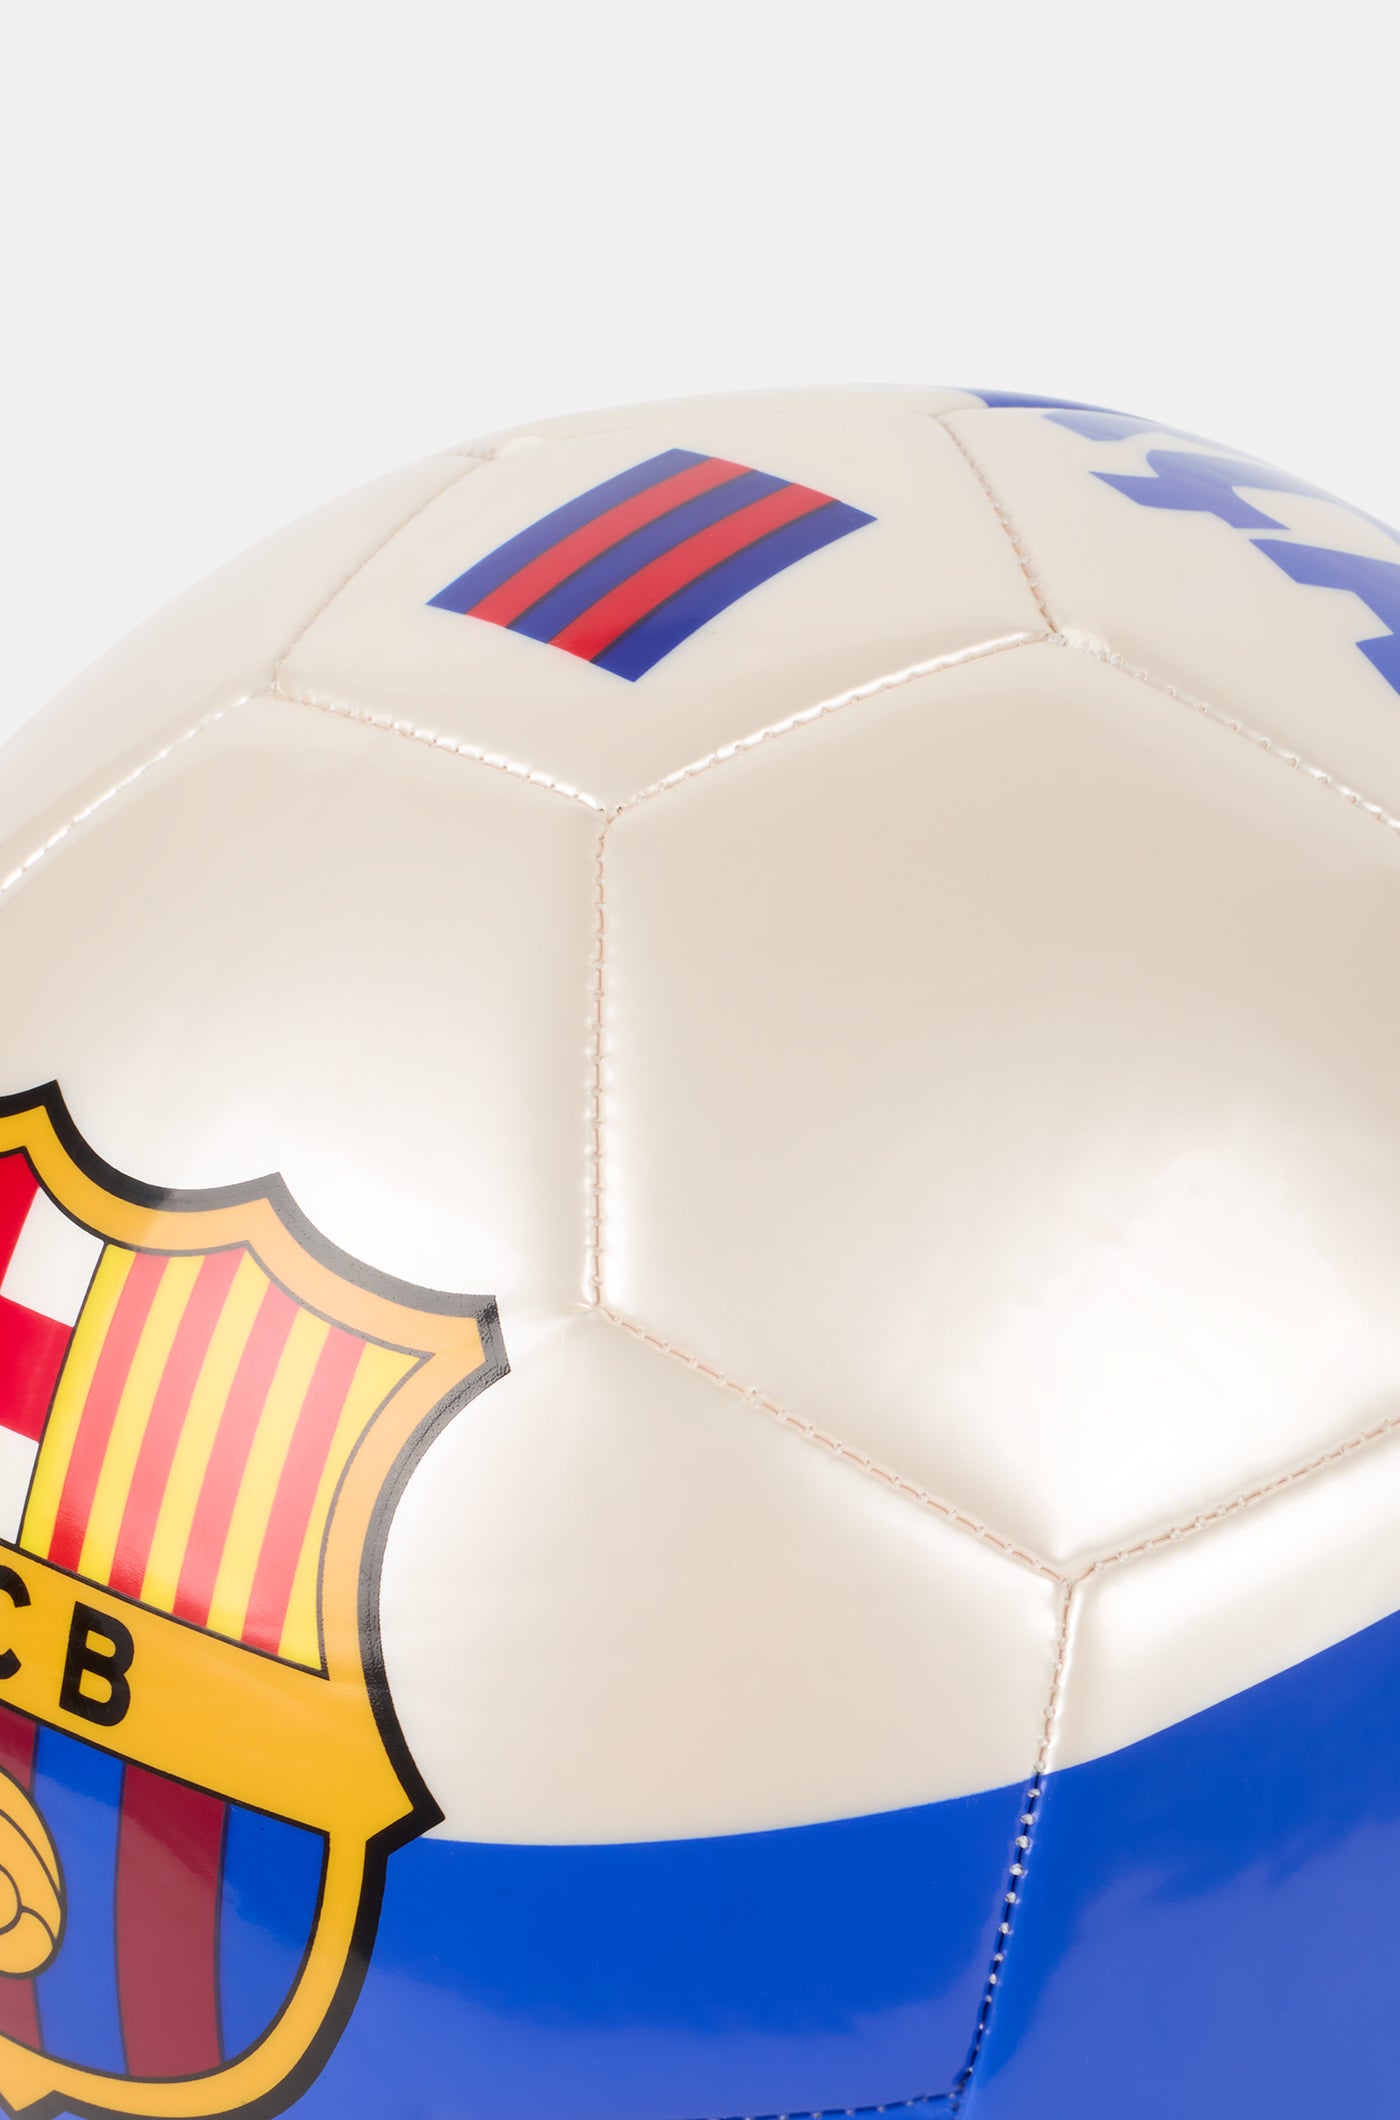 Balón 2ª equipación 23/24 FC Barcelona